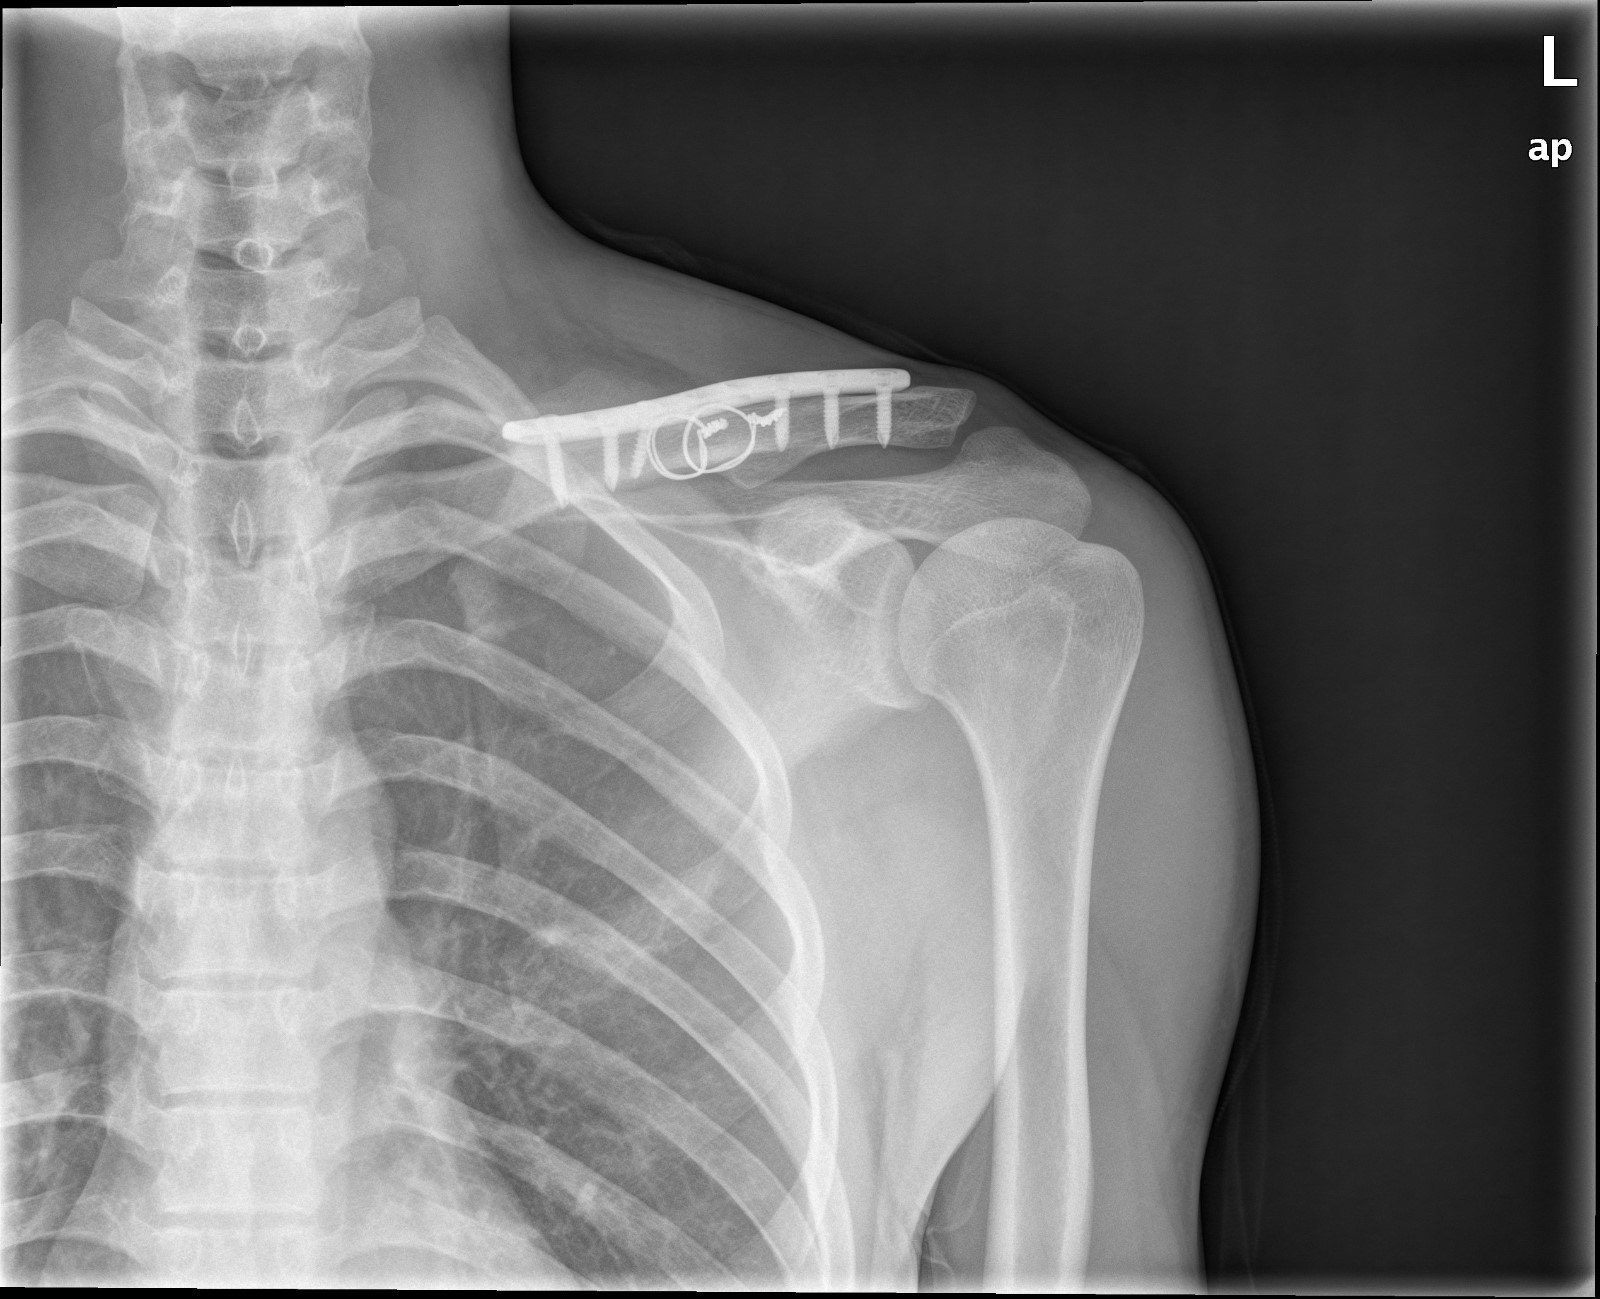 锁骨骨折及肩锁脱位的术后康复 锁骨骨折 锁骨骨折